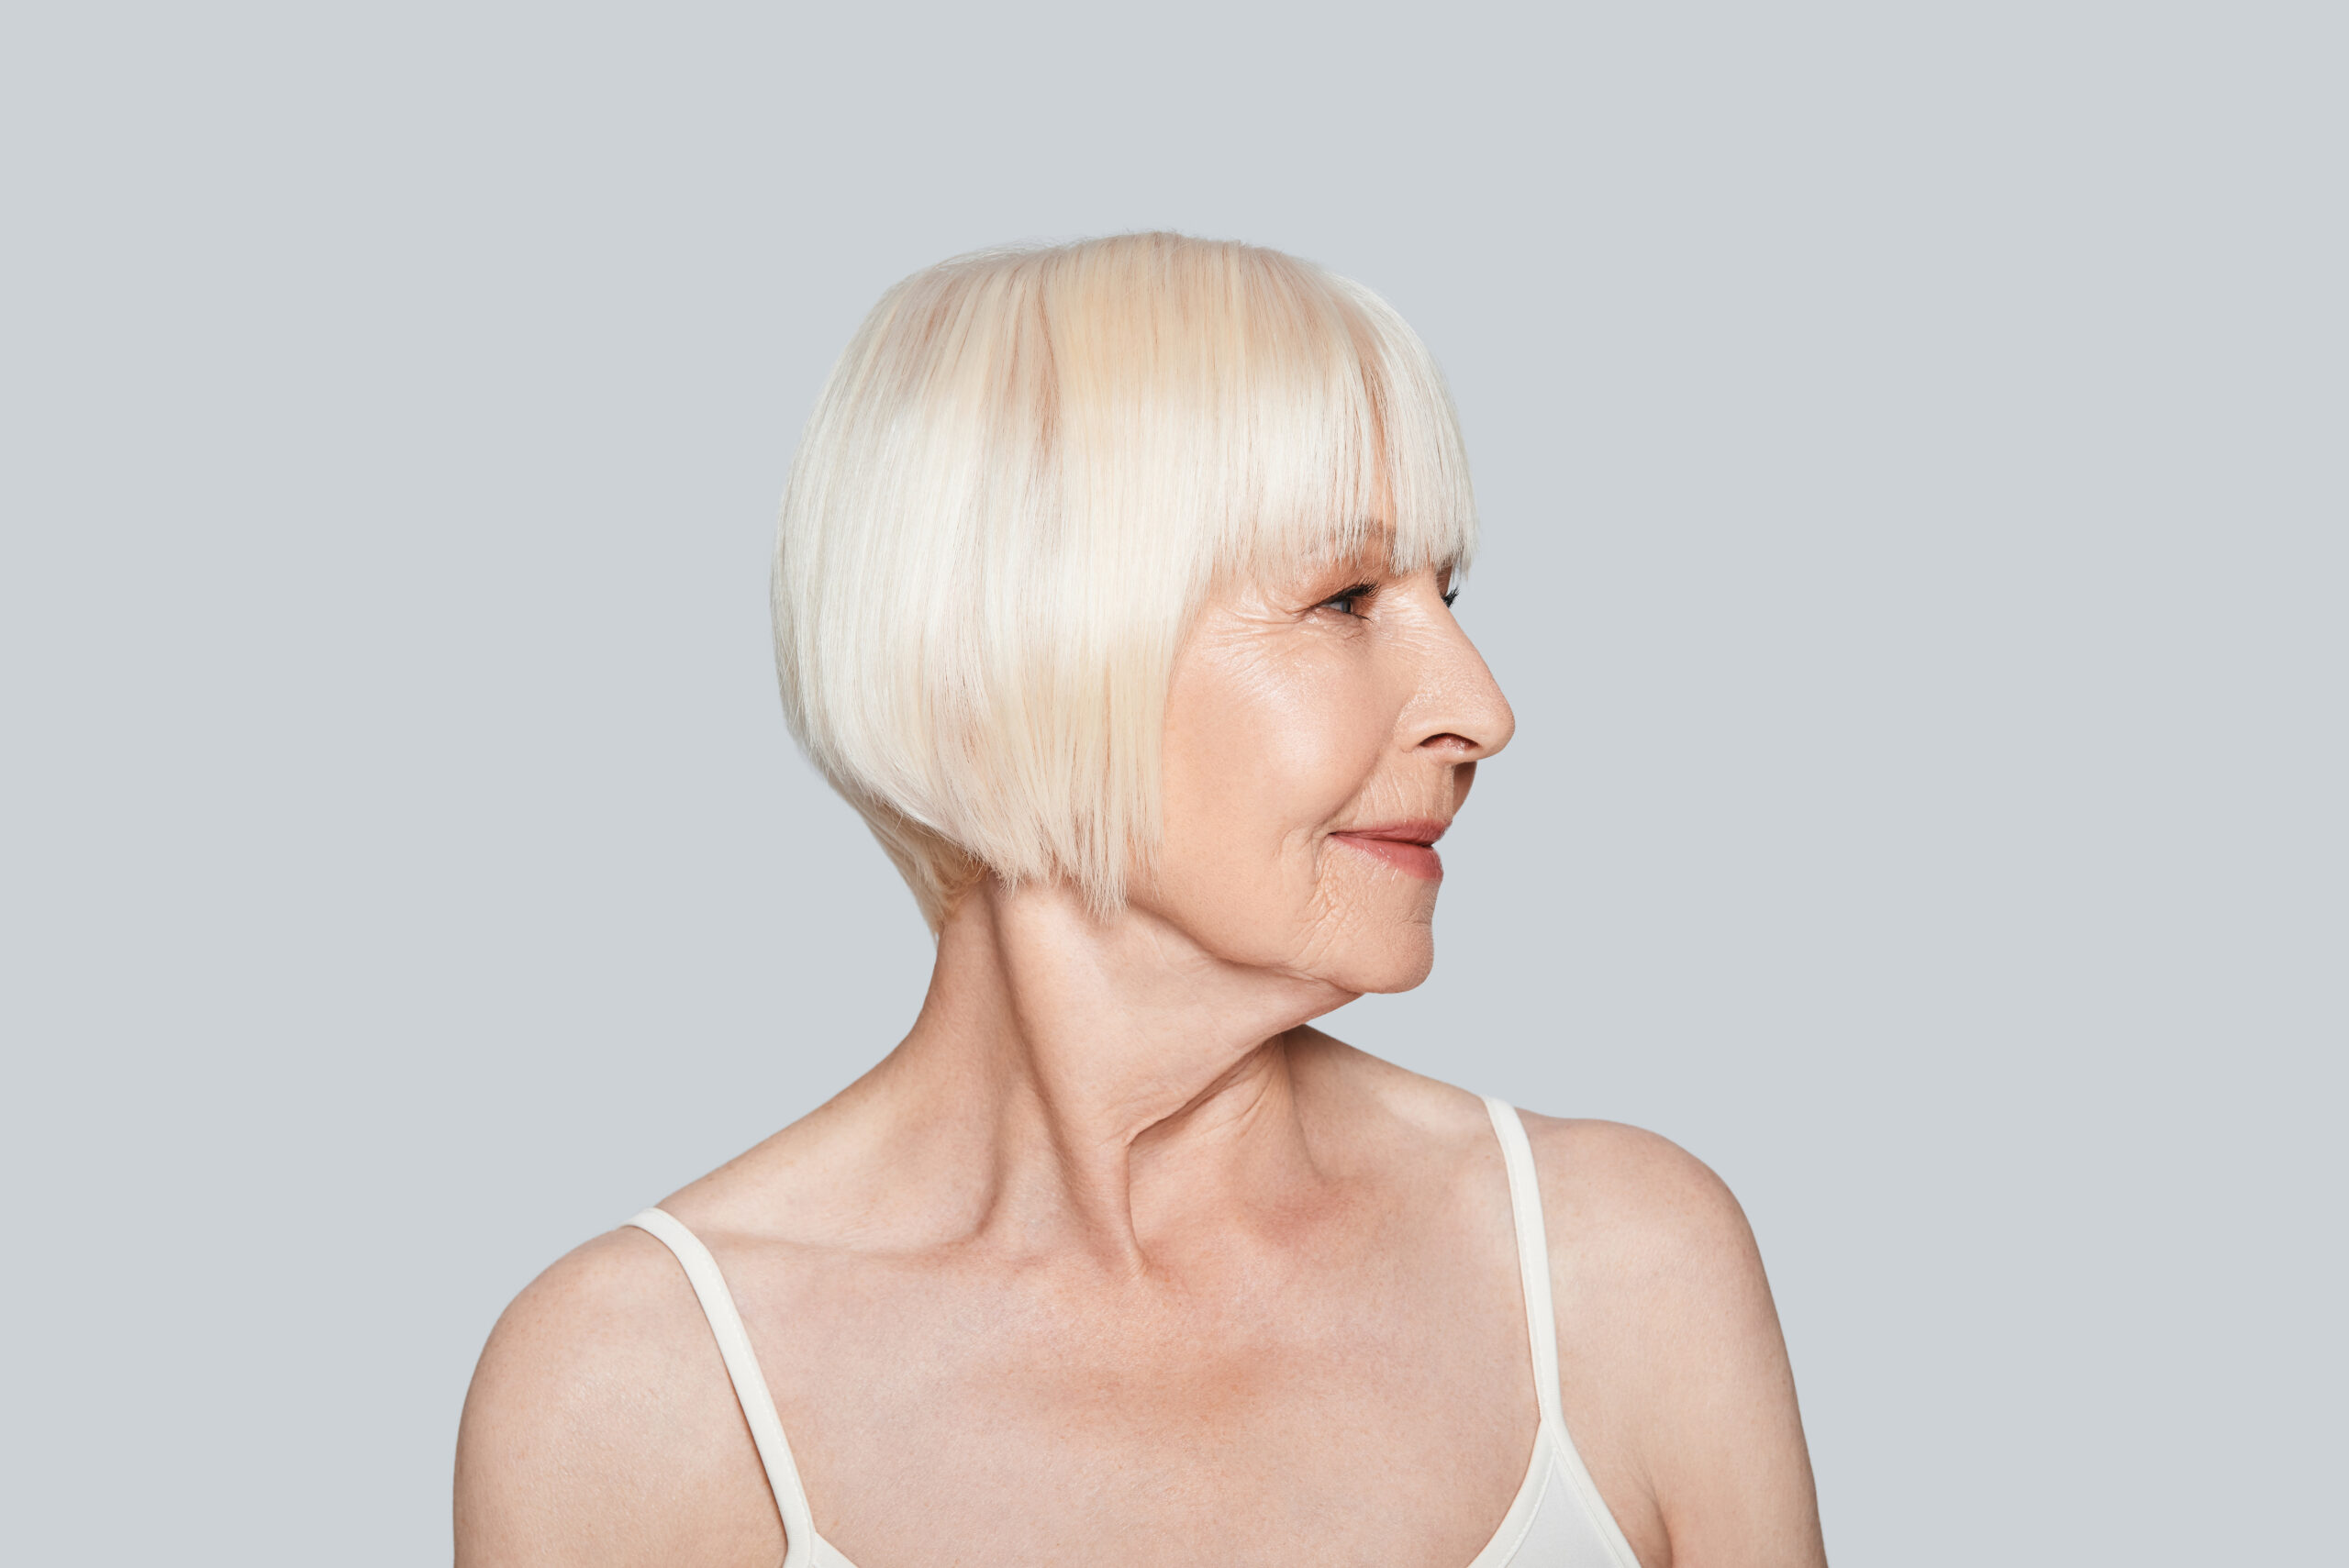 Przedstawione zdjęcie ukazuje kobietę w wieku 50 lat, która ma na sobie krótką fryzurę o mdłym kolorze. Włosy kobiety są zaczesane na bok i lekko ułożone, co nadaje jej delikatnego wyglądu. Kobieta patrzy w kamerę z uśmiechem, co może sugerować, że czuje się komfortowo w swojej fryzurze